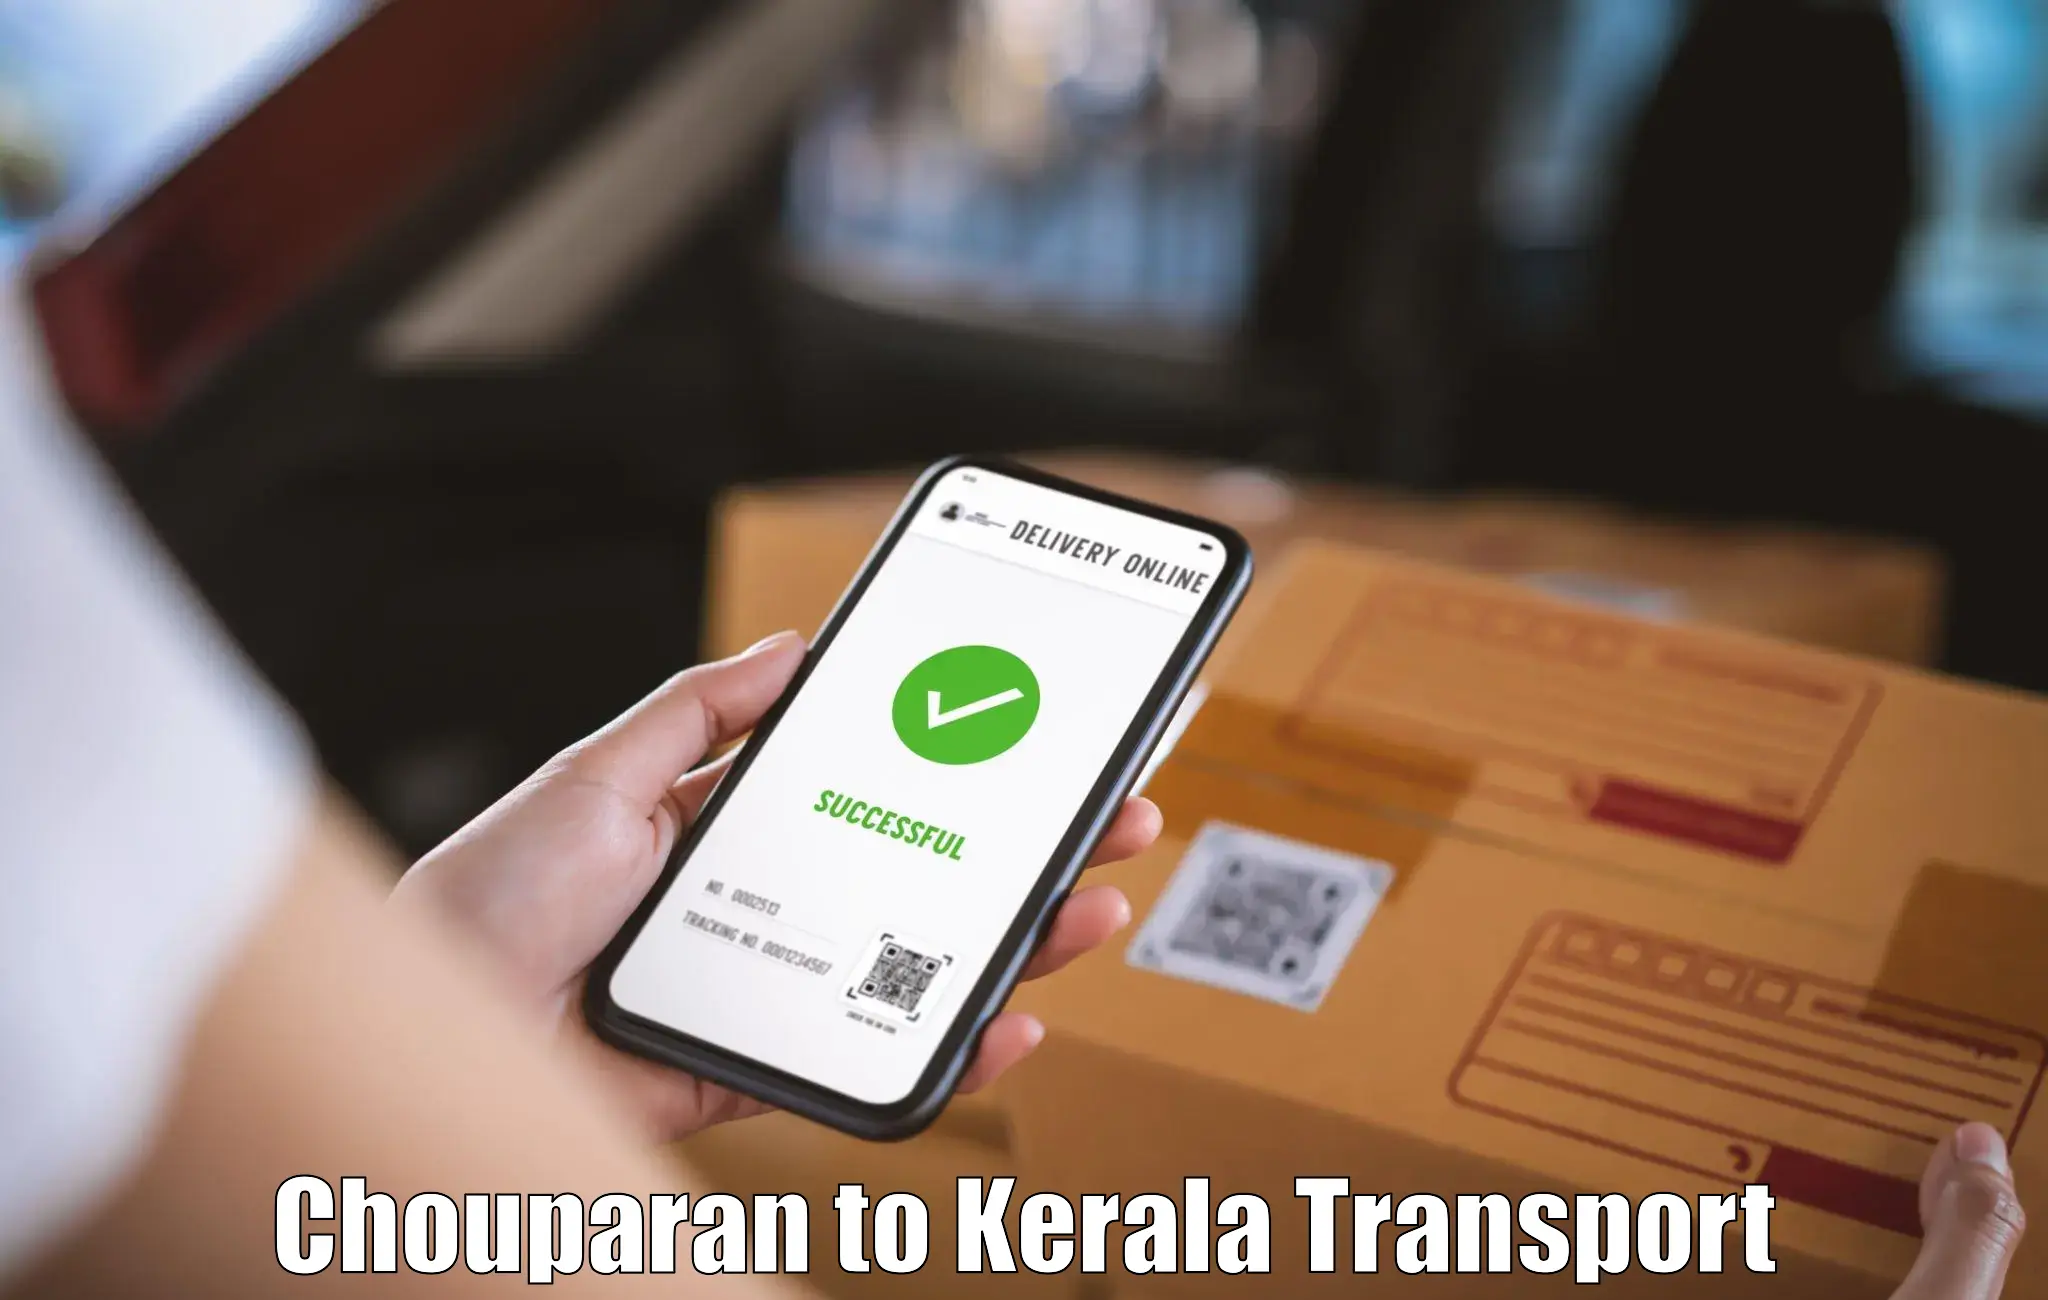 Logistics transportation services Chouparan to Alakode